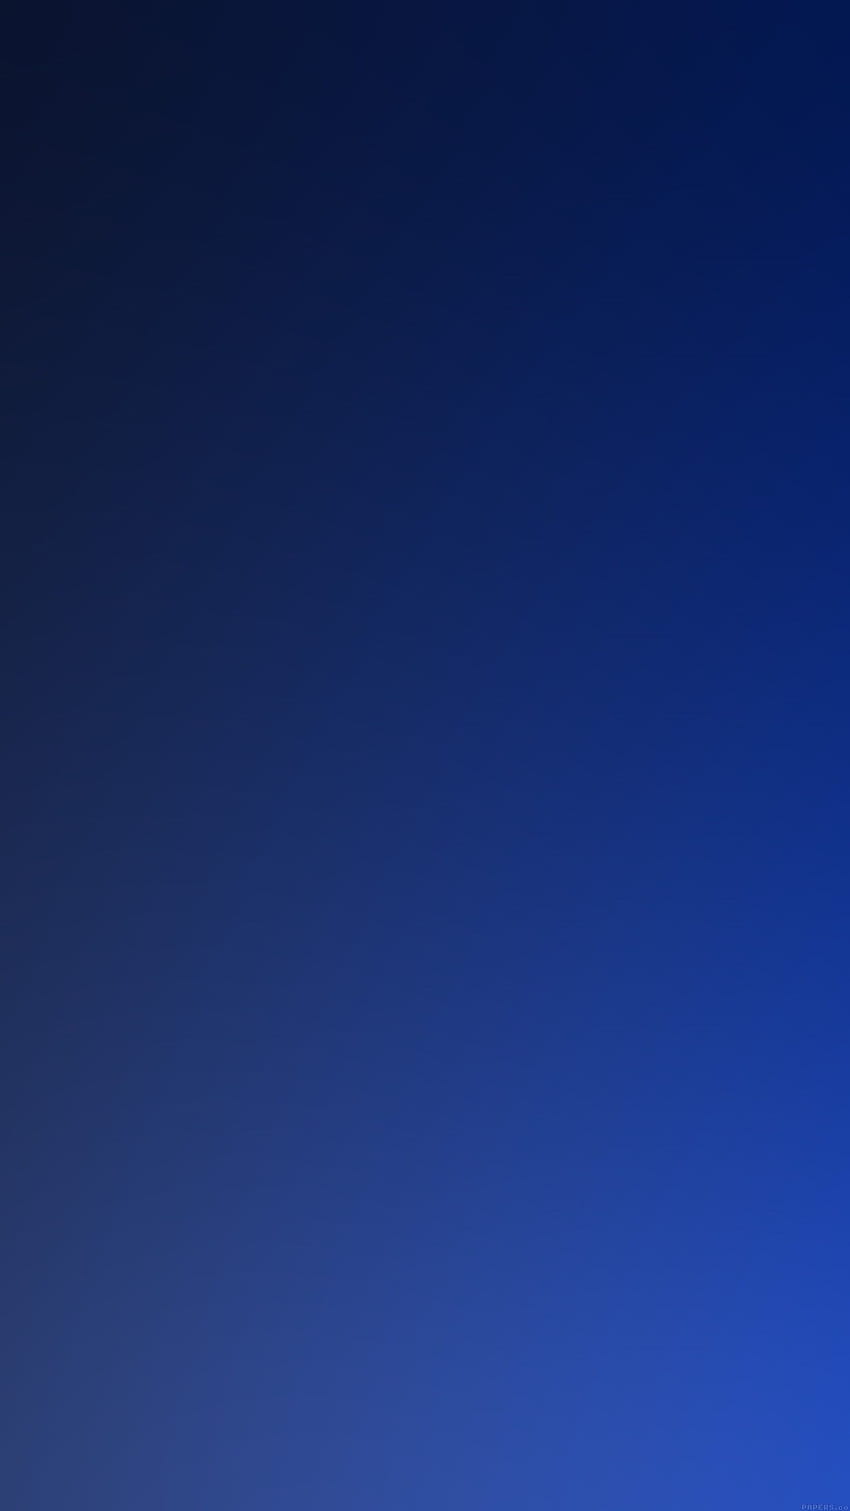 iPhone7papers - gradasi samudra biru tua buram wallpaper ponsel HD